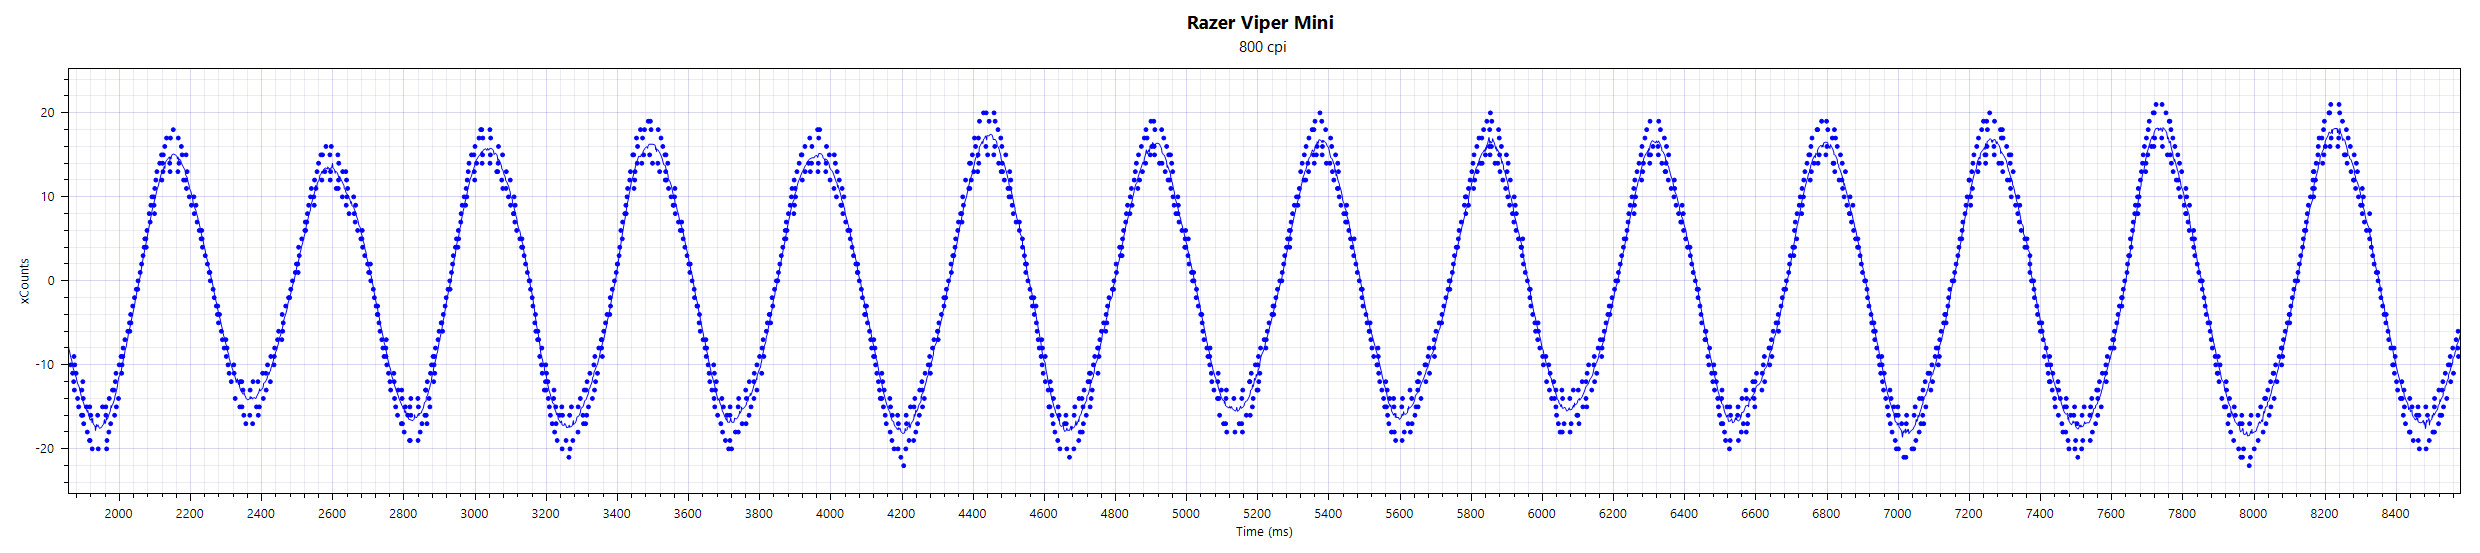 Razer_Viper_Mini_X